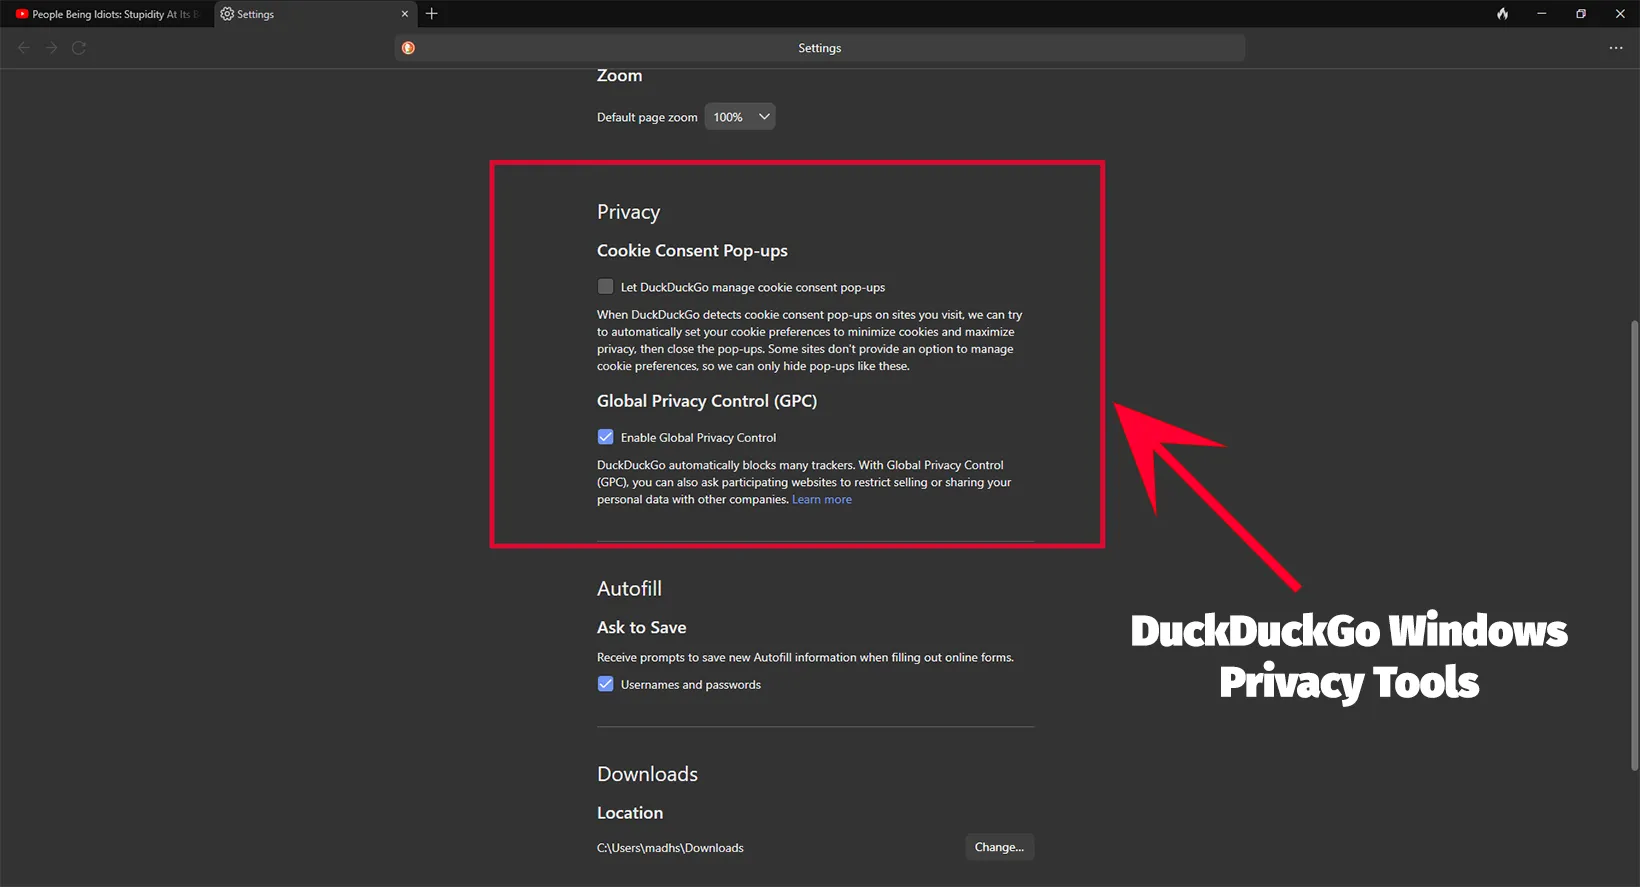 DuckDuckGo Windows Privacy Tools